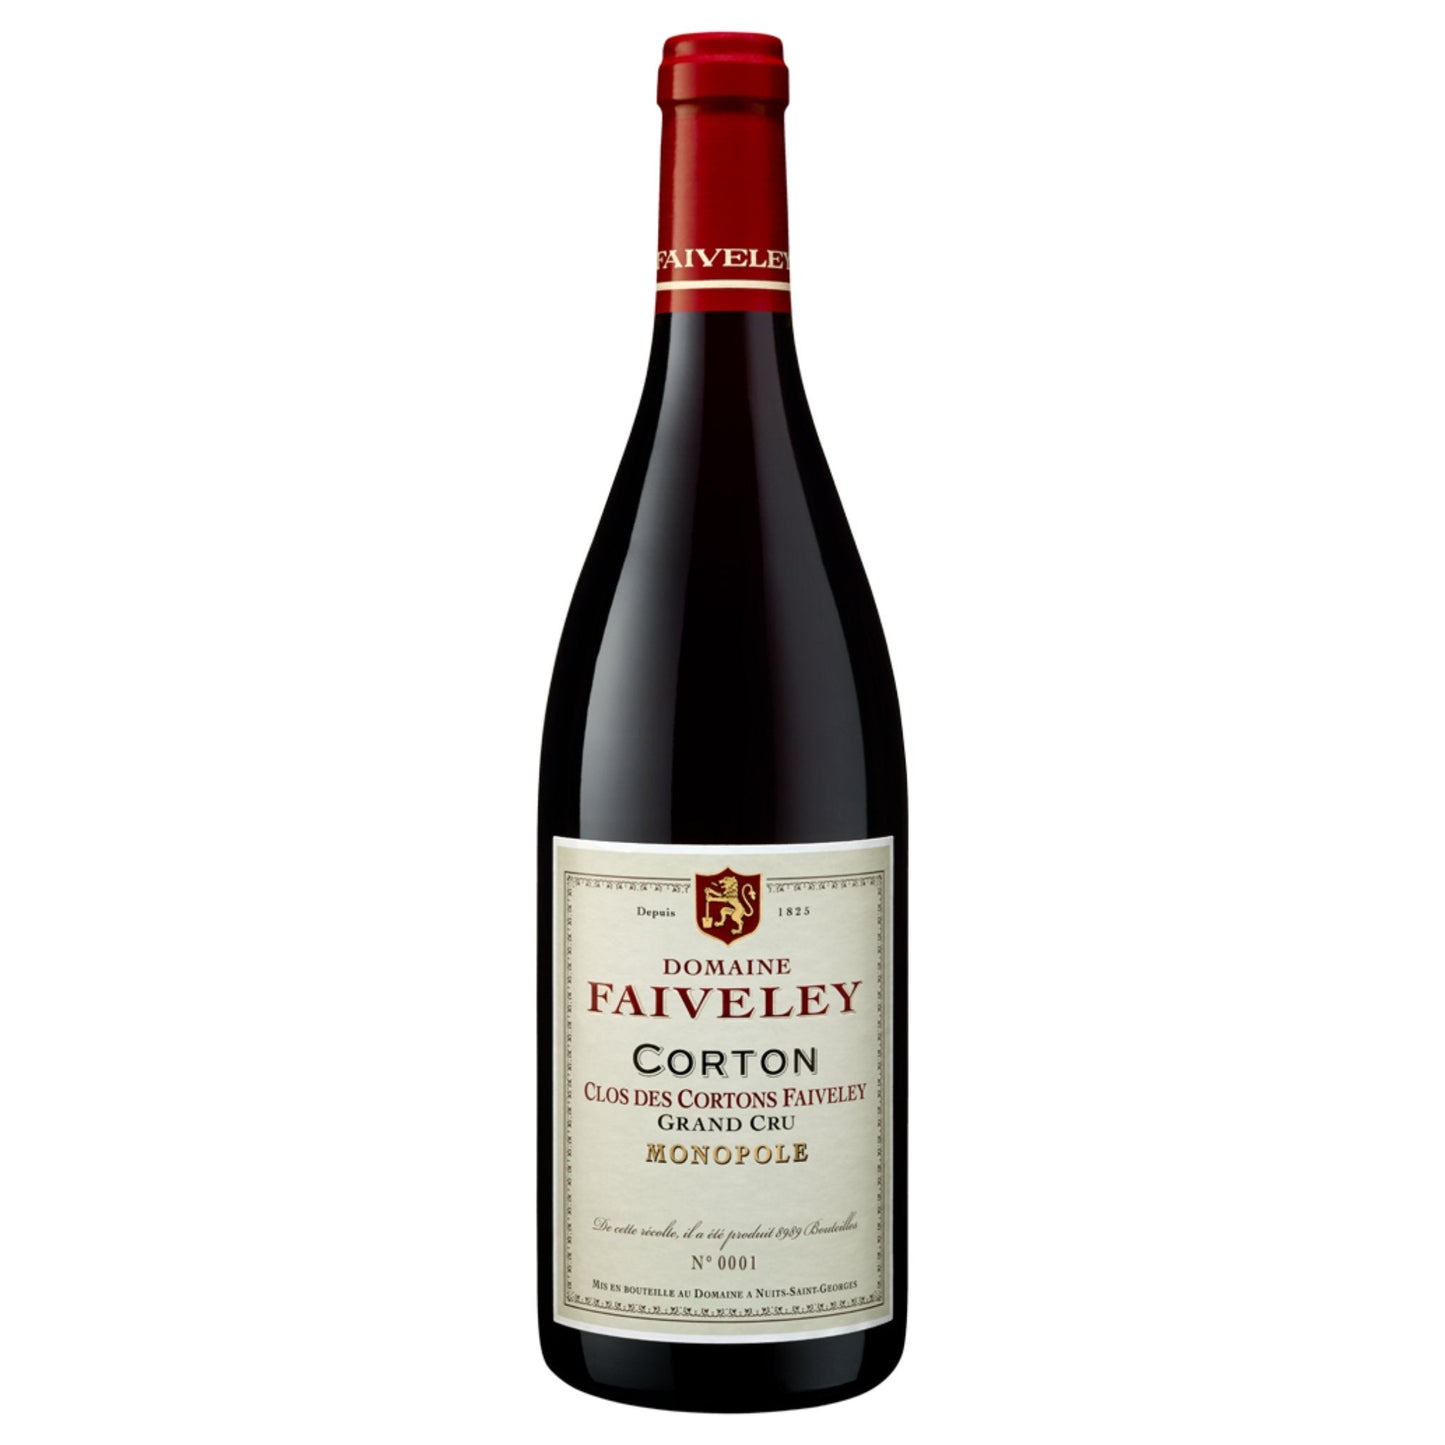 Faiveley Corton "Clos des Cortons Faiveley" Grand Cru 3000ml - Grand Vin Pte Ltd